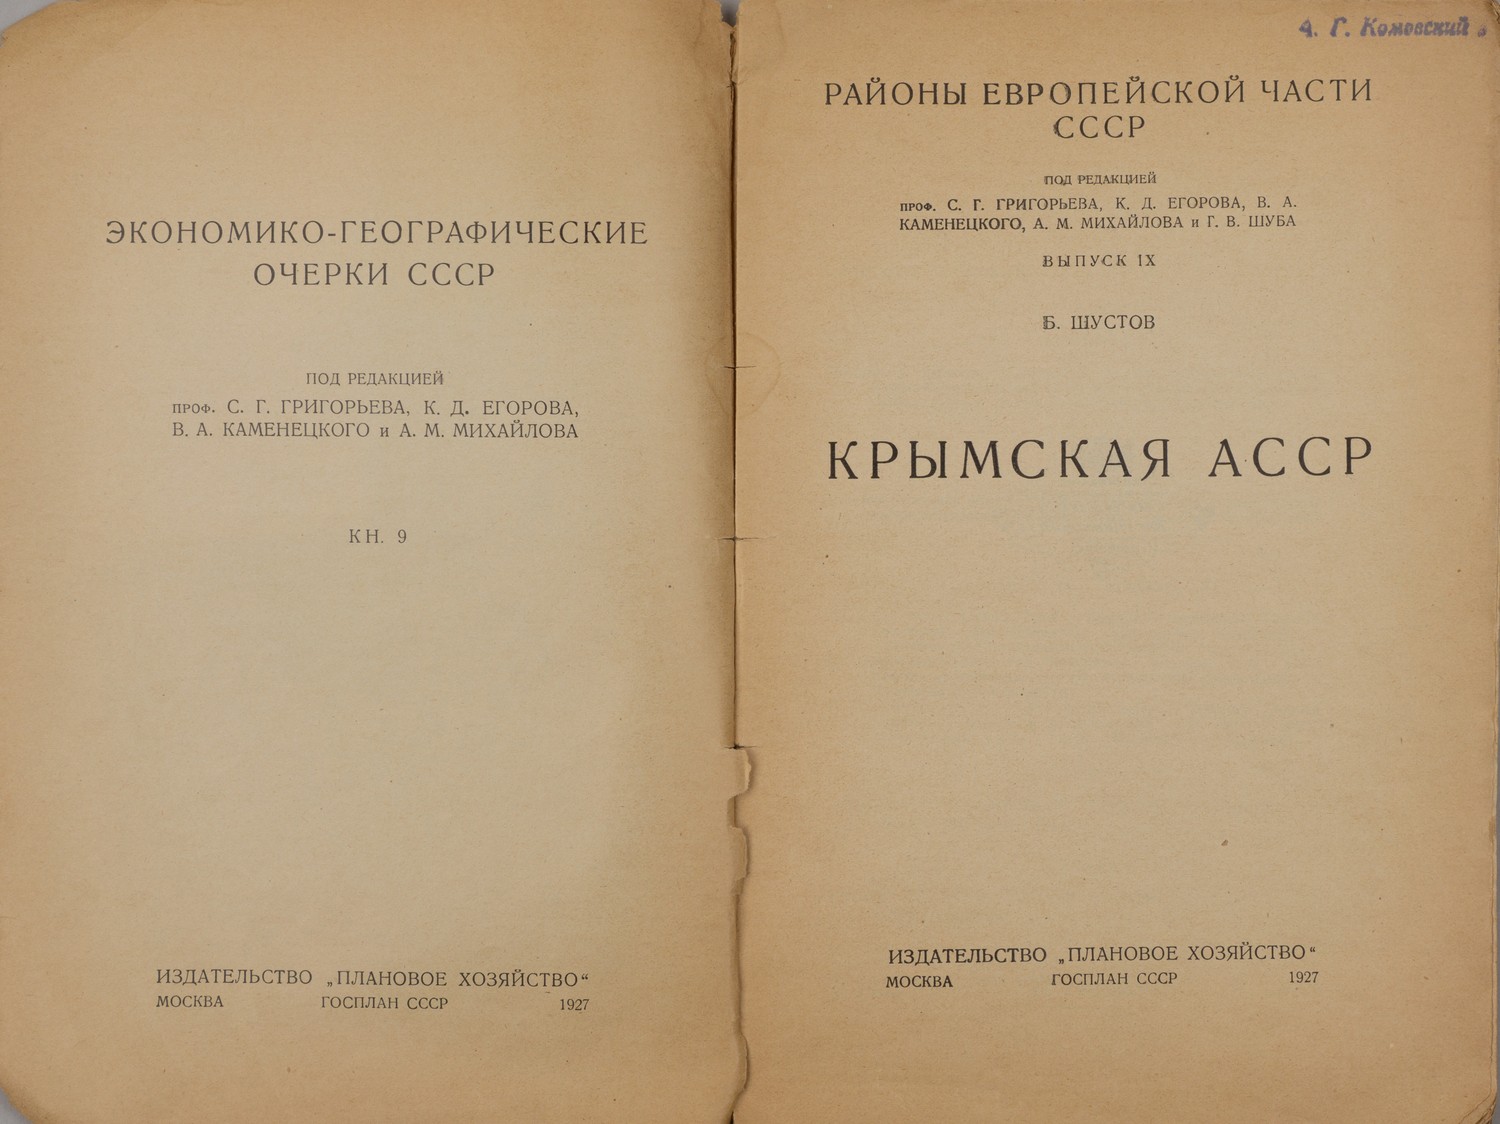 Шустов Б. Крымская АССР (М., 1927).